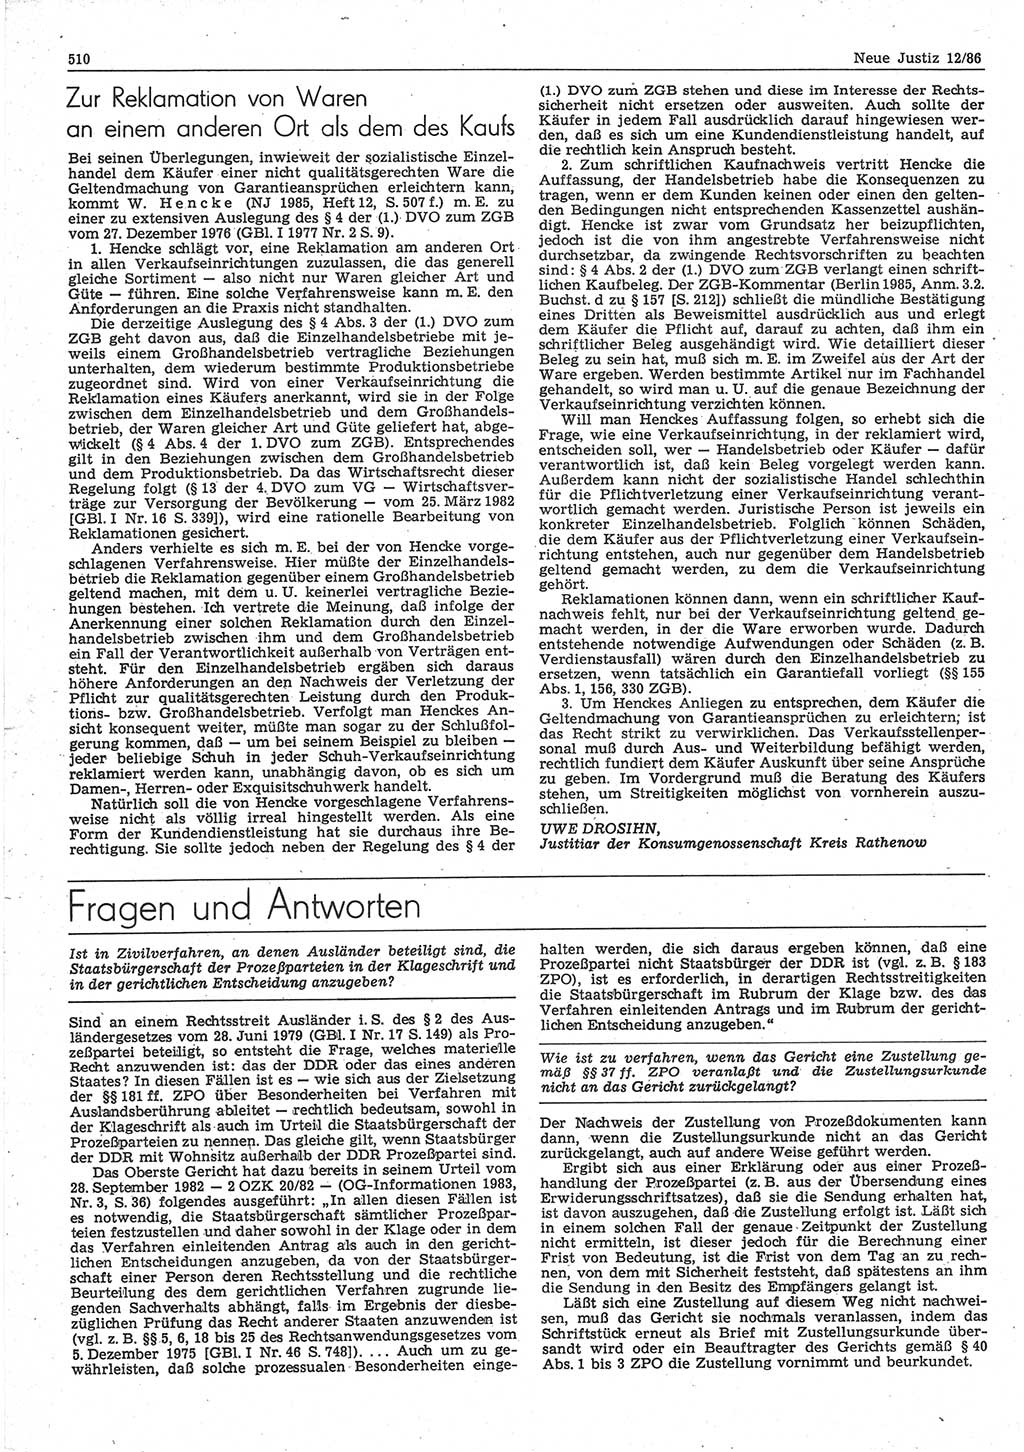 Neue Justiz (NJ), Zeitschrift für sozialistisches Recht und Gesetzlichkeit [Deutsche Demokratische Republik (DDR)], 40. Jahrgang 1986, Seite 510 (NJ DDR 1986, S. 510)